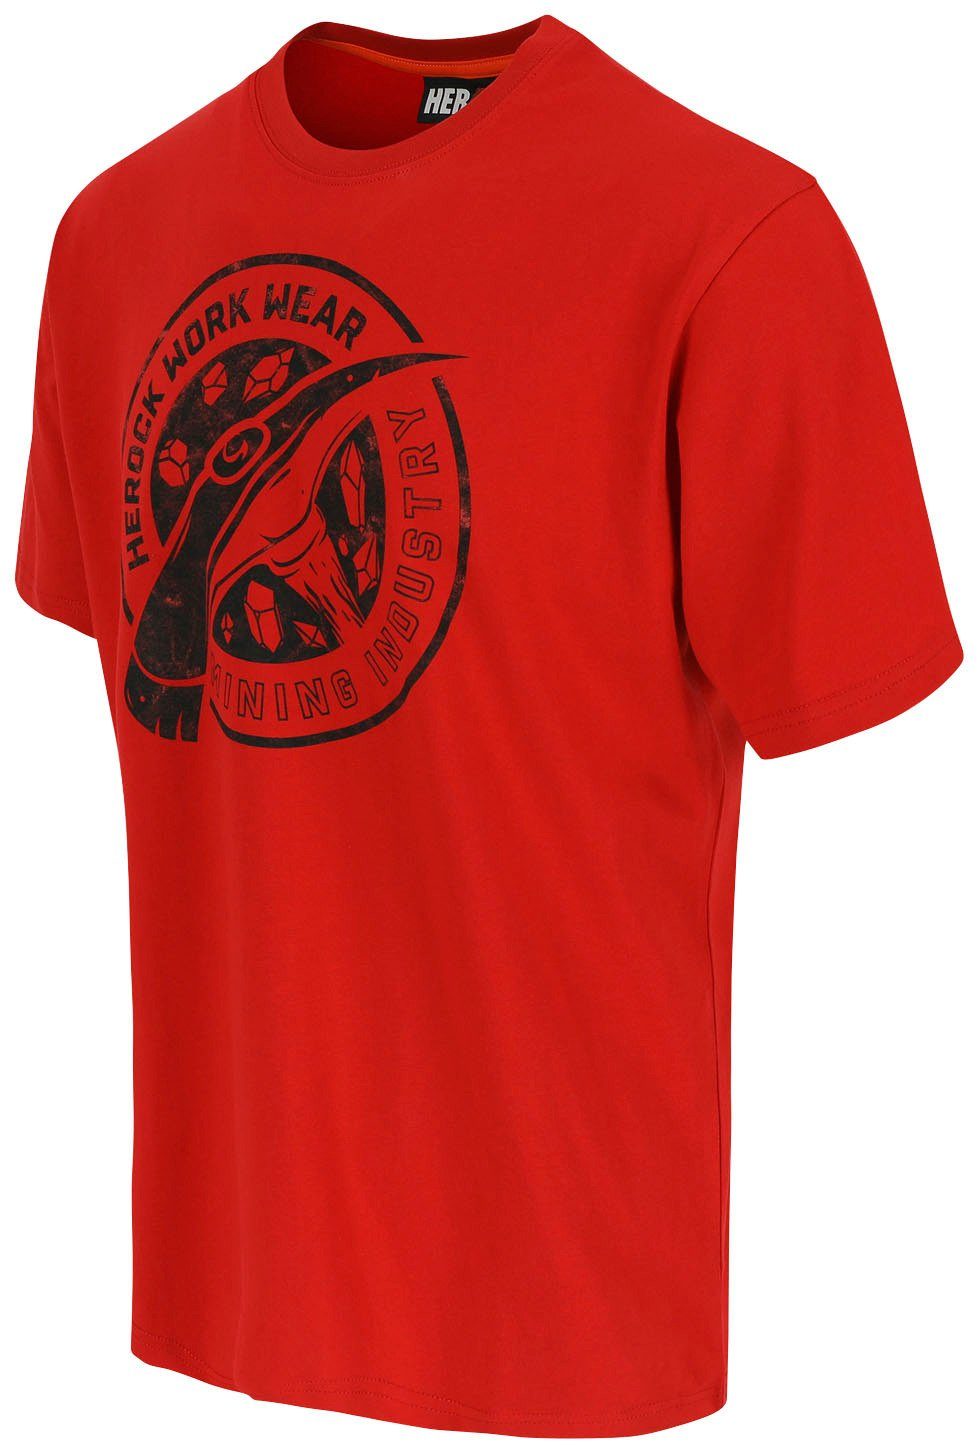 Herock T-Shirt Worker Limited in Farben rot erhältlich Edition, verschiedene